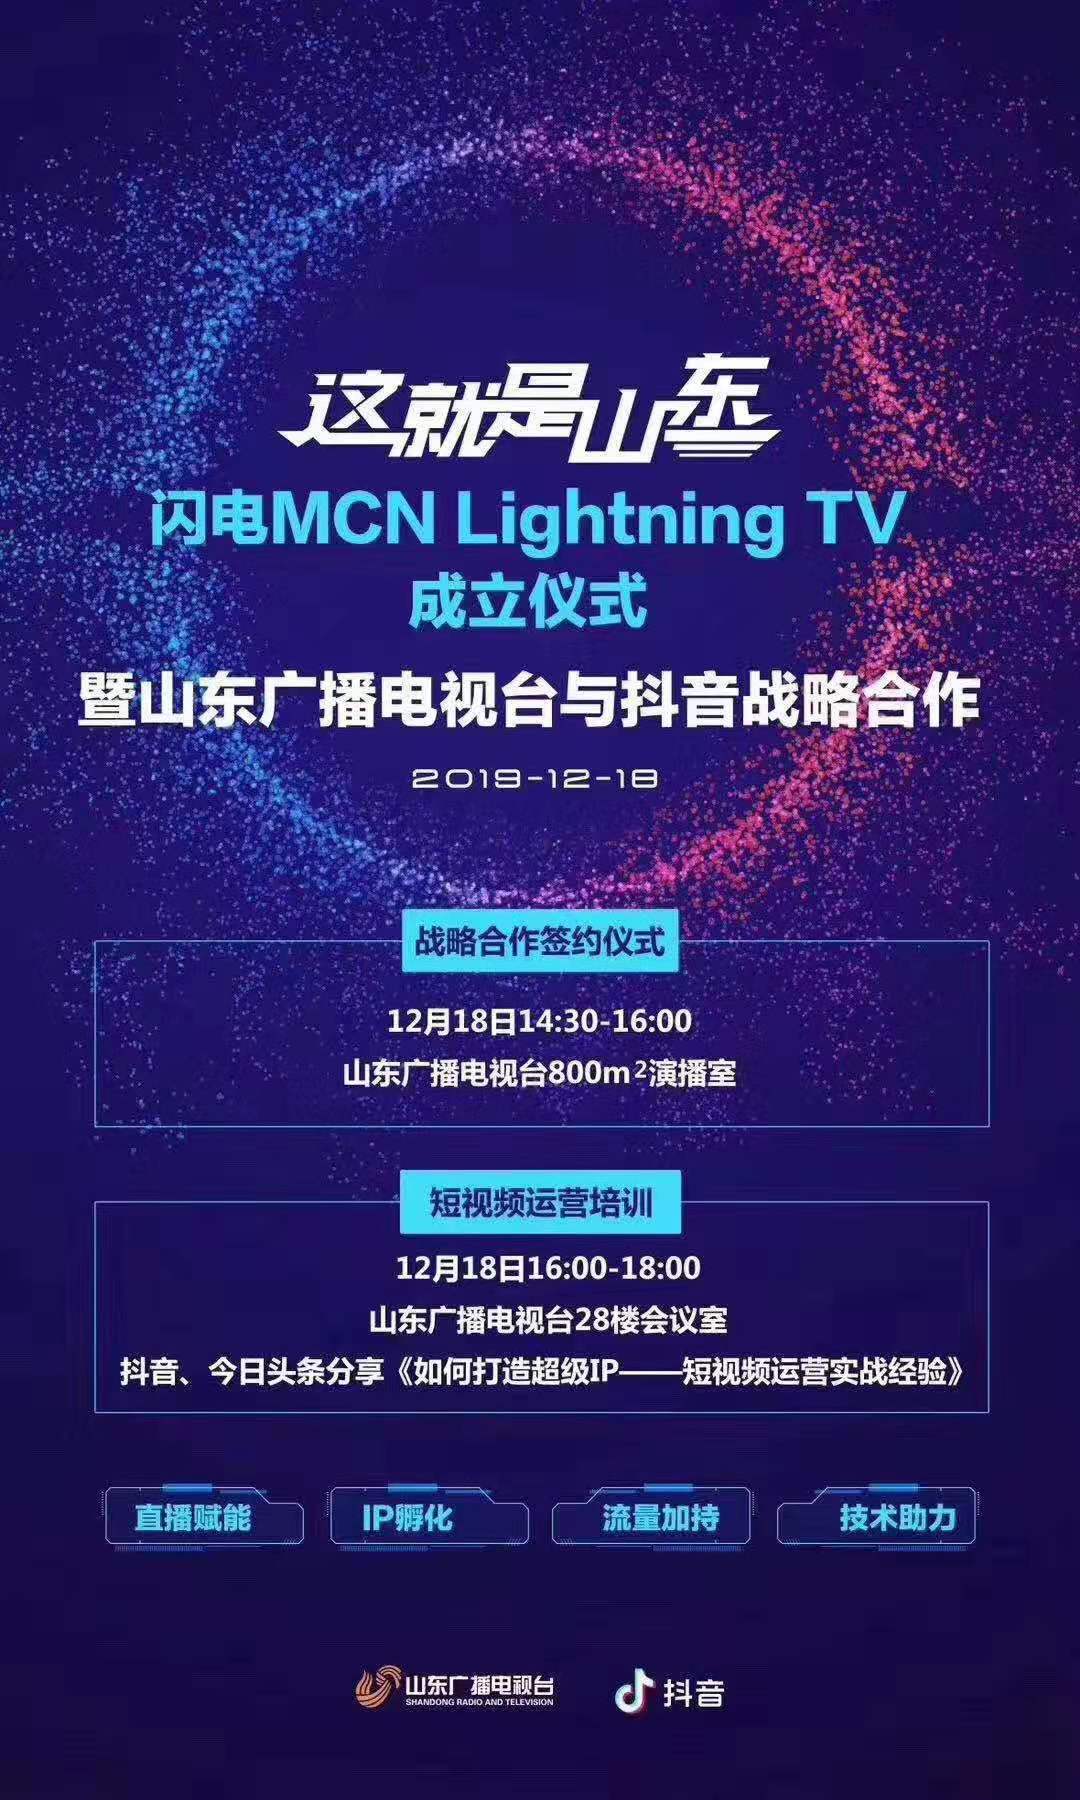 闪电MCN  Lightning  TV  成立仪式.jpg